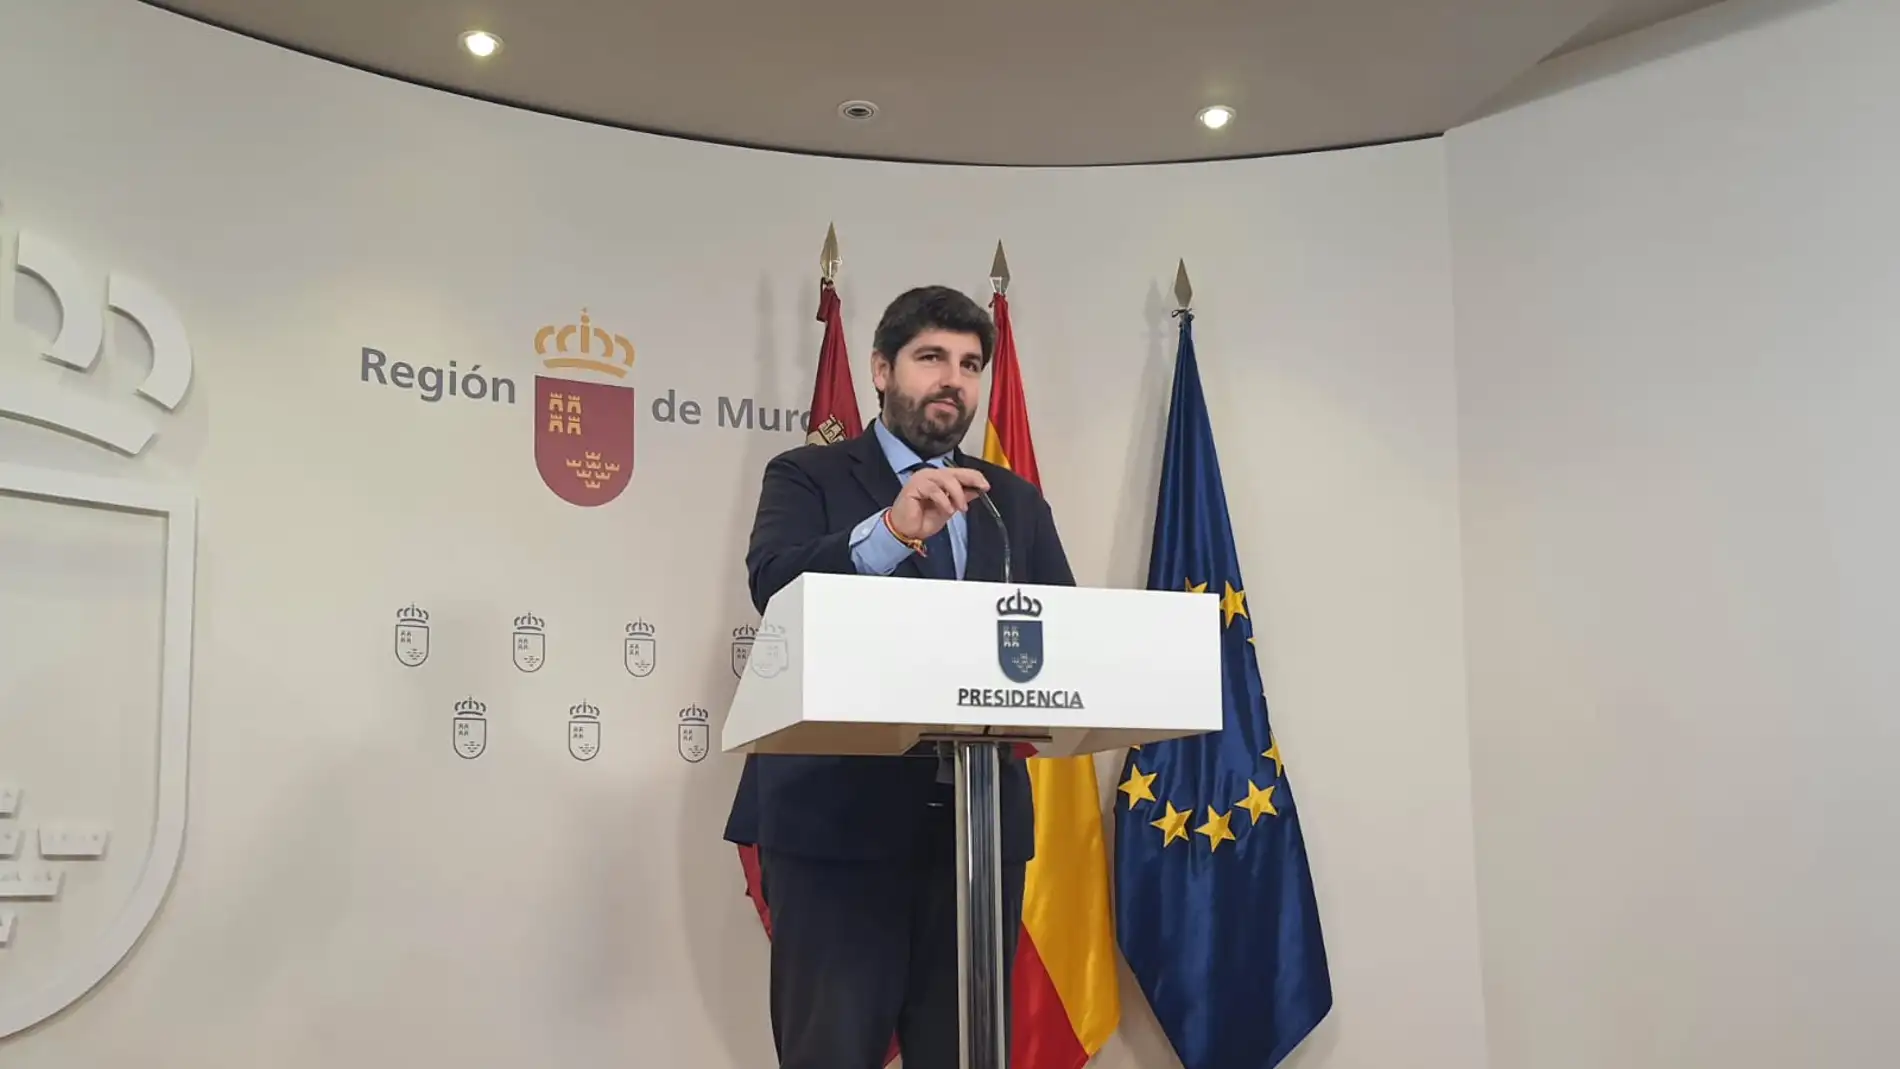 El ejecutivo murciano presenta alegaciones técnicas y jurídicas contra el recorte del trasvase Tajo-Segura